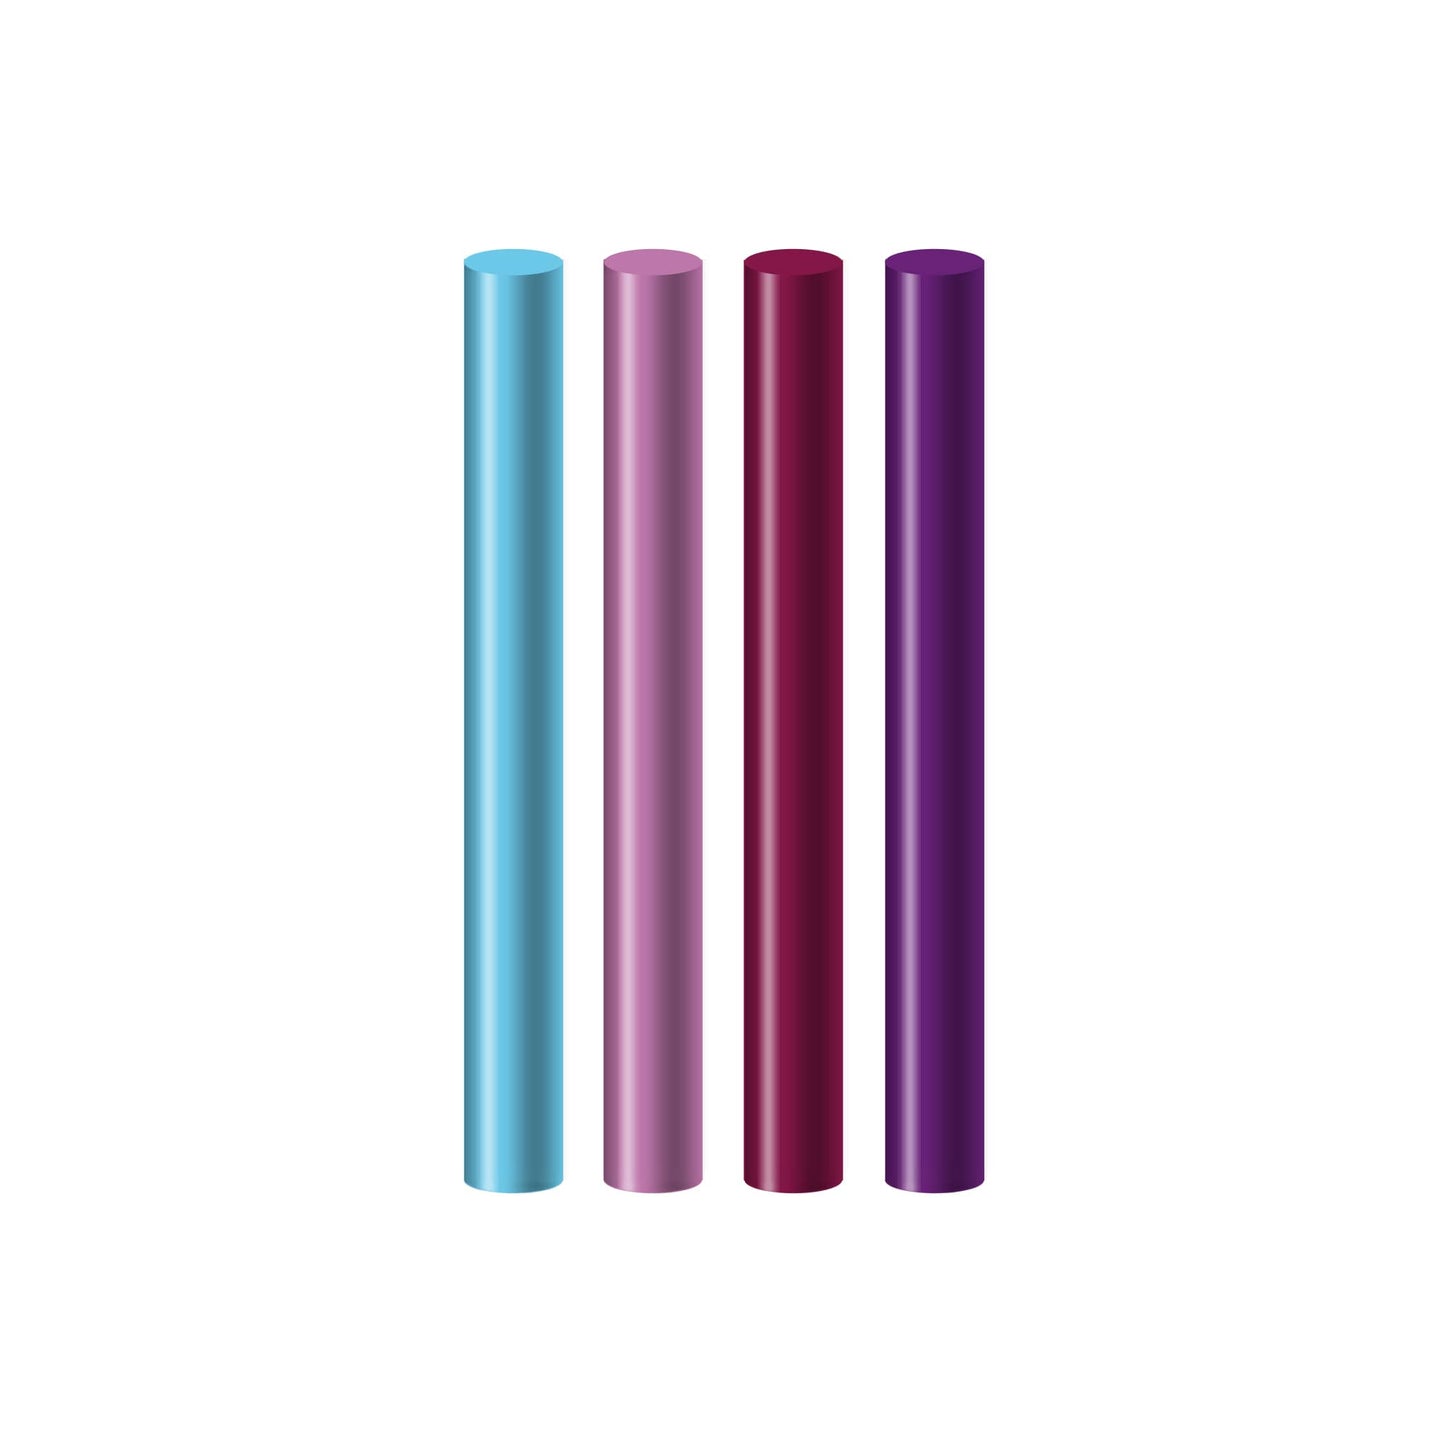 Seccorell-Farbstäbchen in zarten bis intensiven Violett- und Lilatönen, ideal für das Gestalten von Flieder- und Veilchenmotiven.